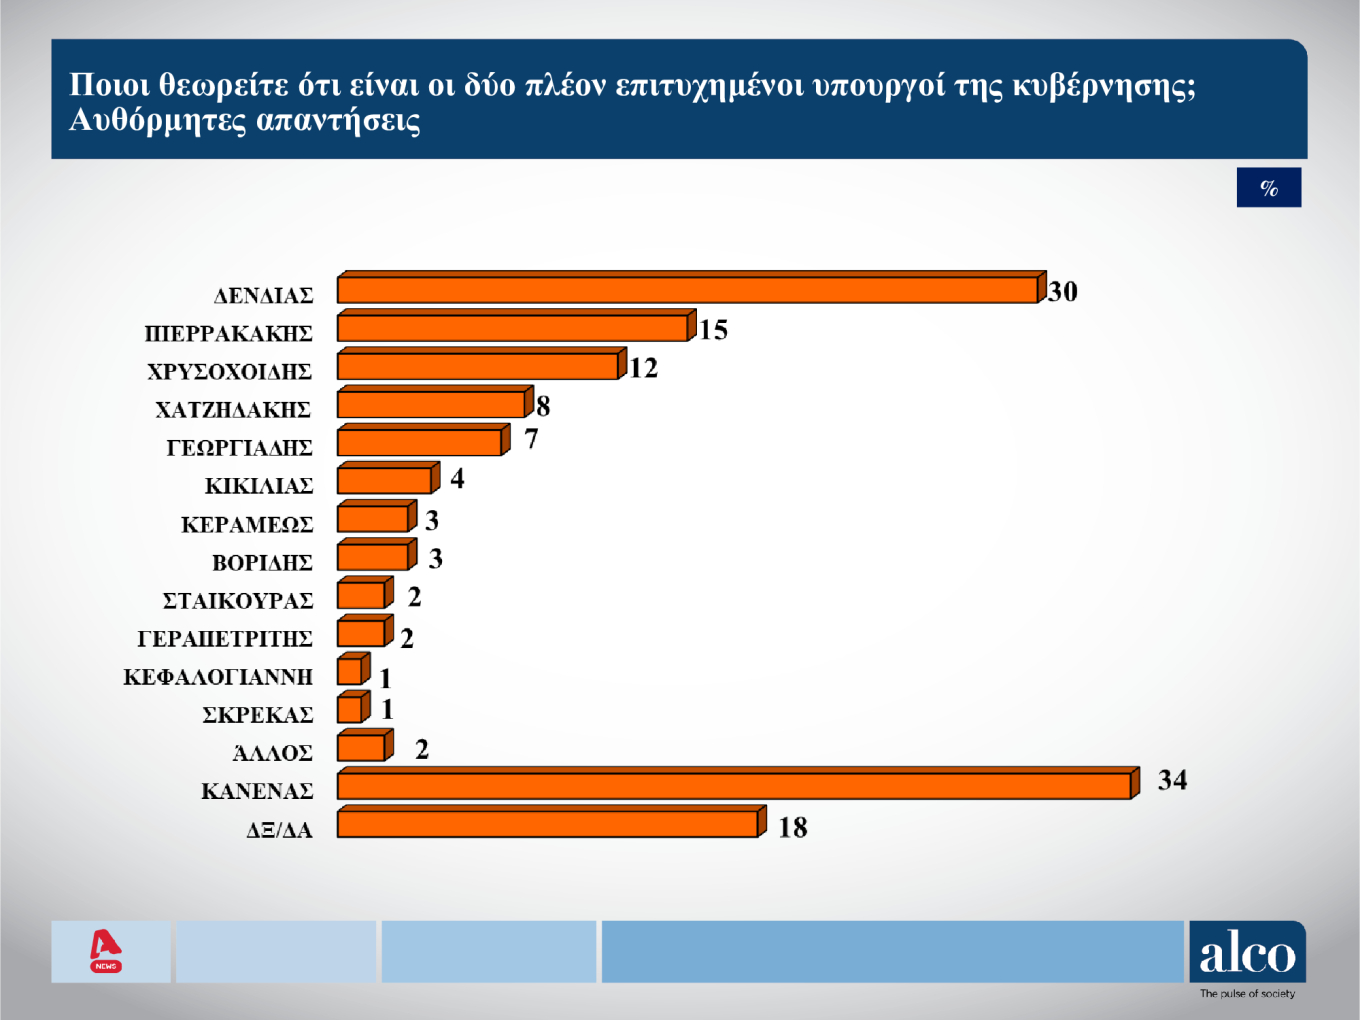 Δημοσκόπηση Alco: Ποιοι είναι οι πιο επιτυχημένοι υπουργοί της Kυβέρνησης